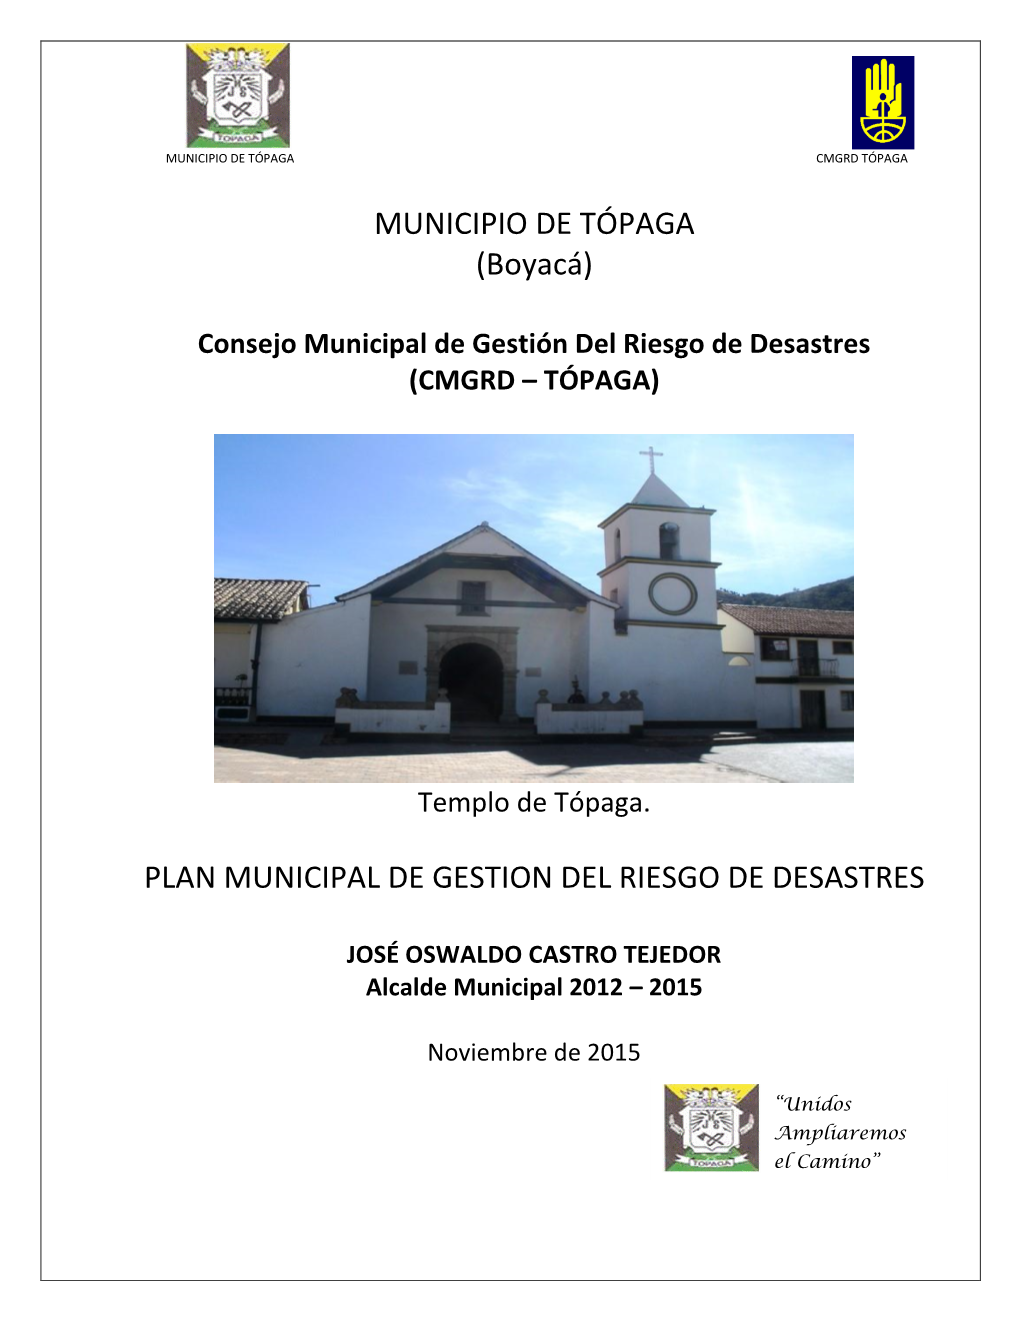 MUNICIPIO DE TÓPAGA (Boyacá) PLAN MUNICIPAL DE GESTION